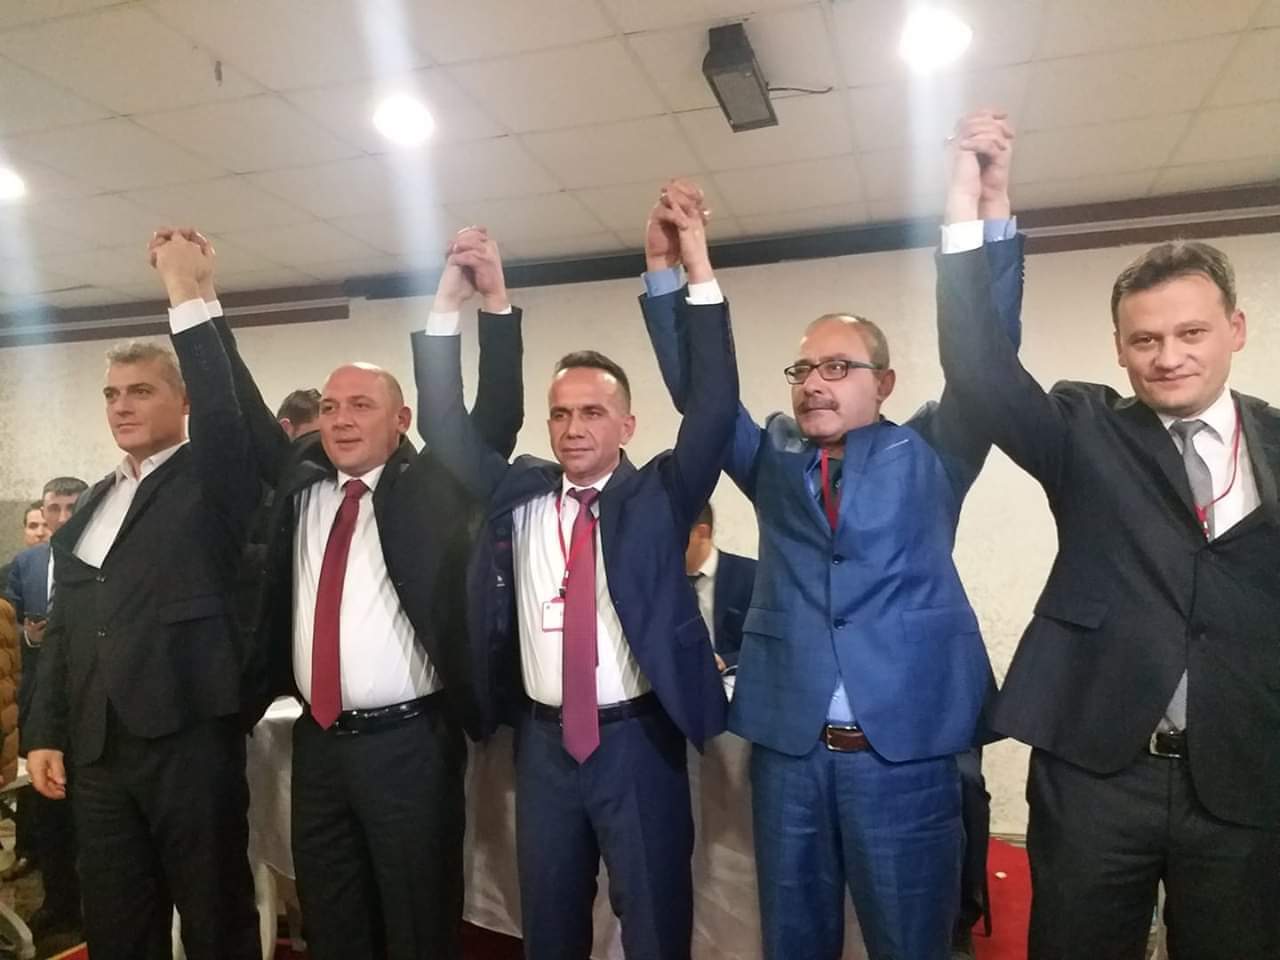 Türk Metalin Yeni Şube Başkanı “Demirbaş” - Kırıkkale Haber, Son Dakika Kırıkkale Haberleri